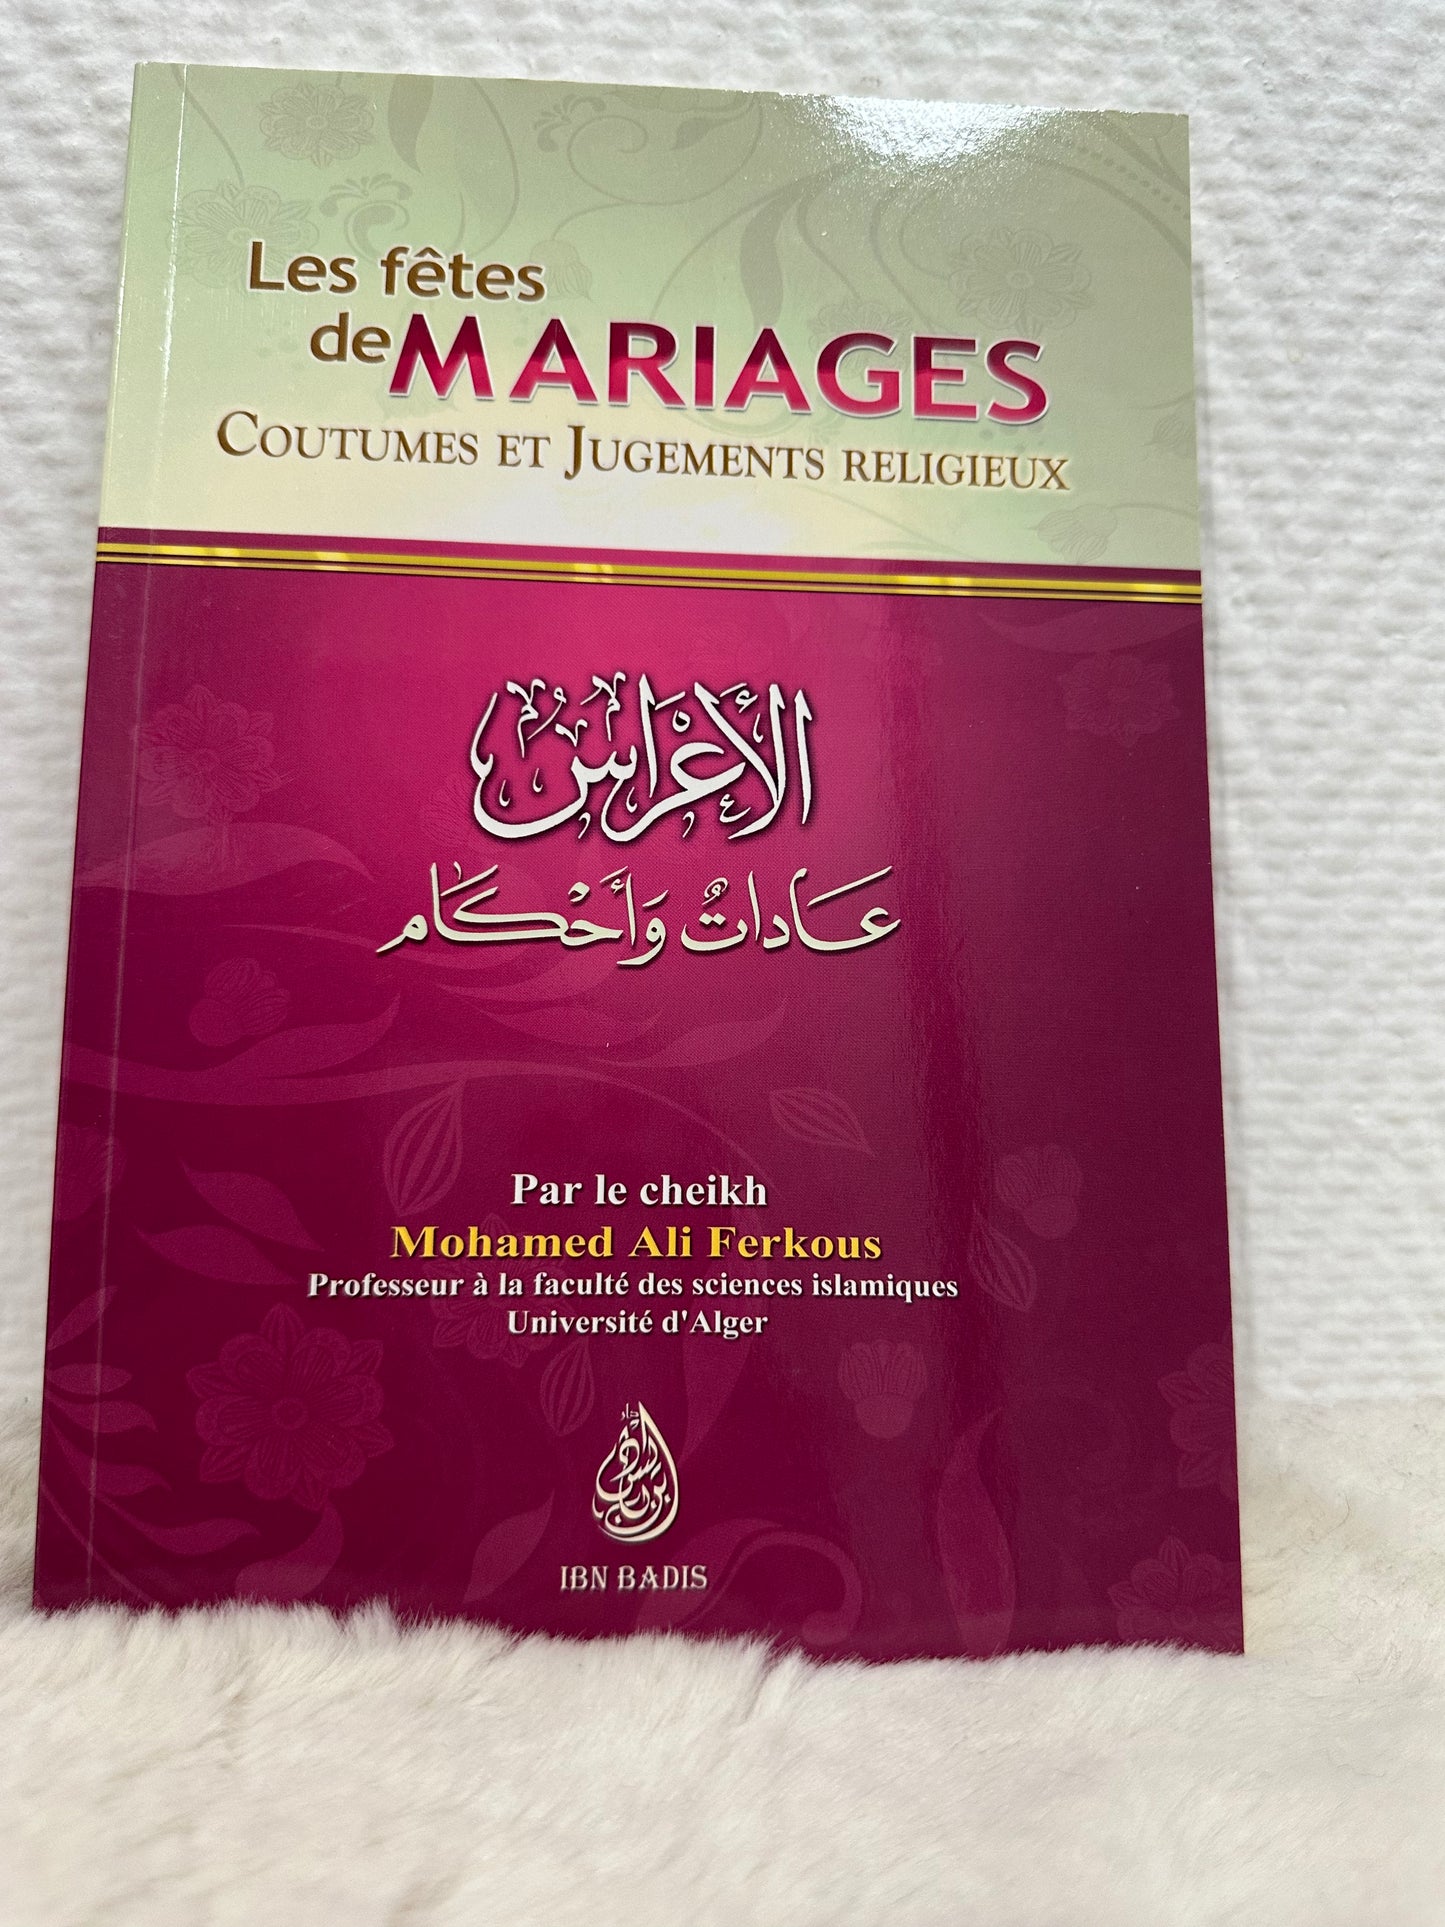 Les fêtes de mariage coutumes et jugements religieux, par le cheikh Mohamed Ali Ferkous